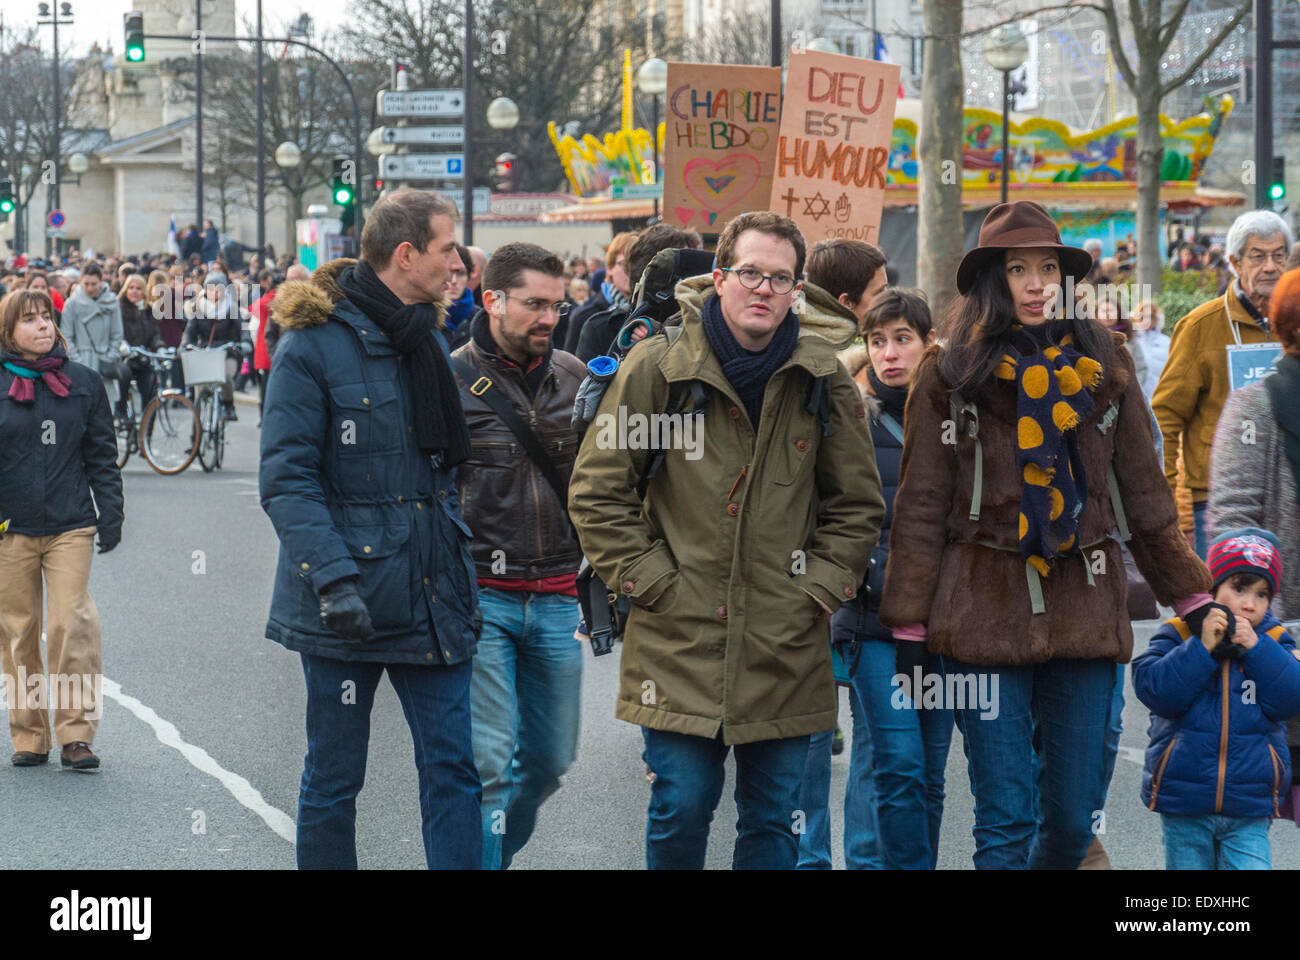 Paris, Street, Frankreich. Marschieren in großer nationaler Demonstration gegen den Terrorismus, nach dem Schuss Angriff auf Französisch News-Zeitung, "Charlie Hebdo", traurige Menge Stockfoto